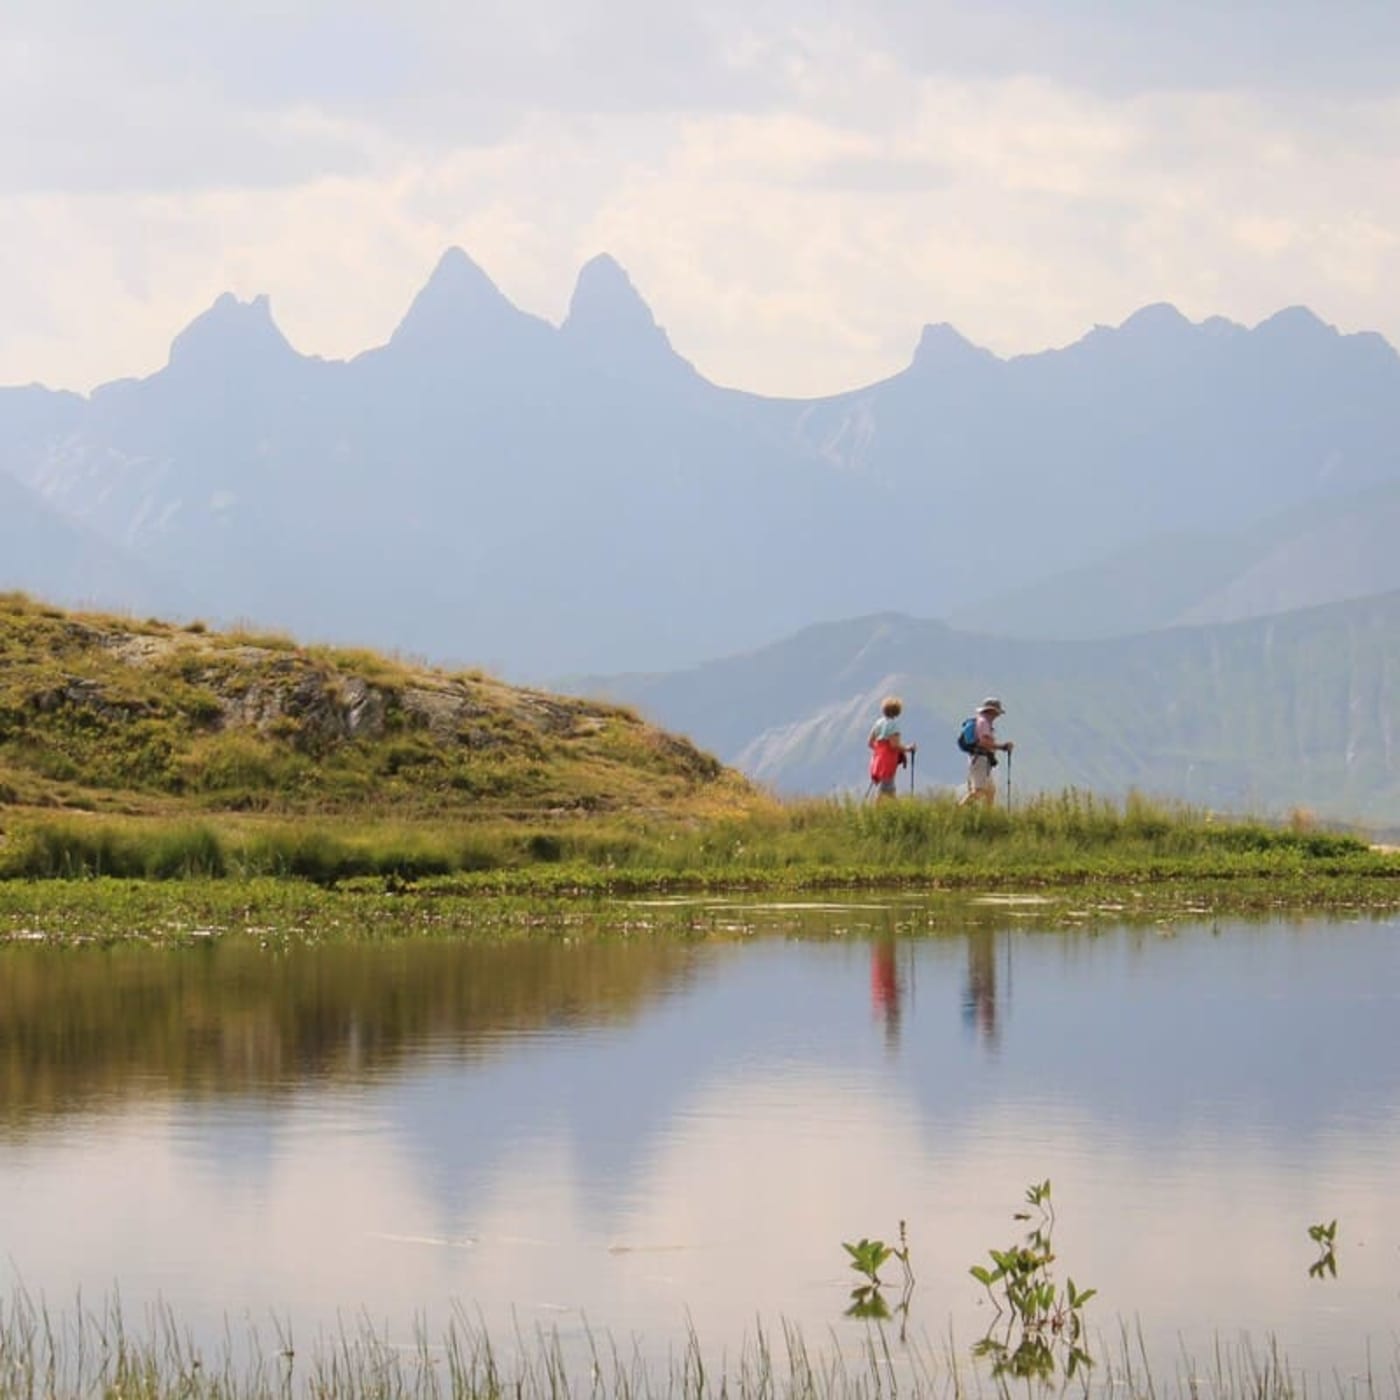 Randonnée lac Guichard : 2 randonneurs se promènent le long du lac où se reflètent les montagnes